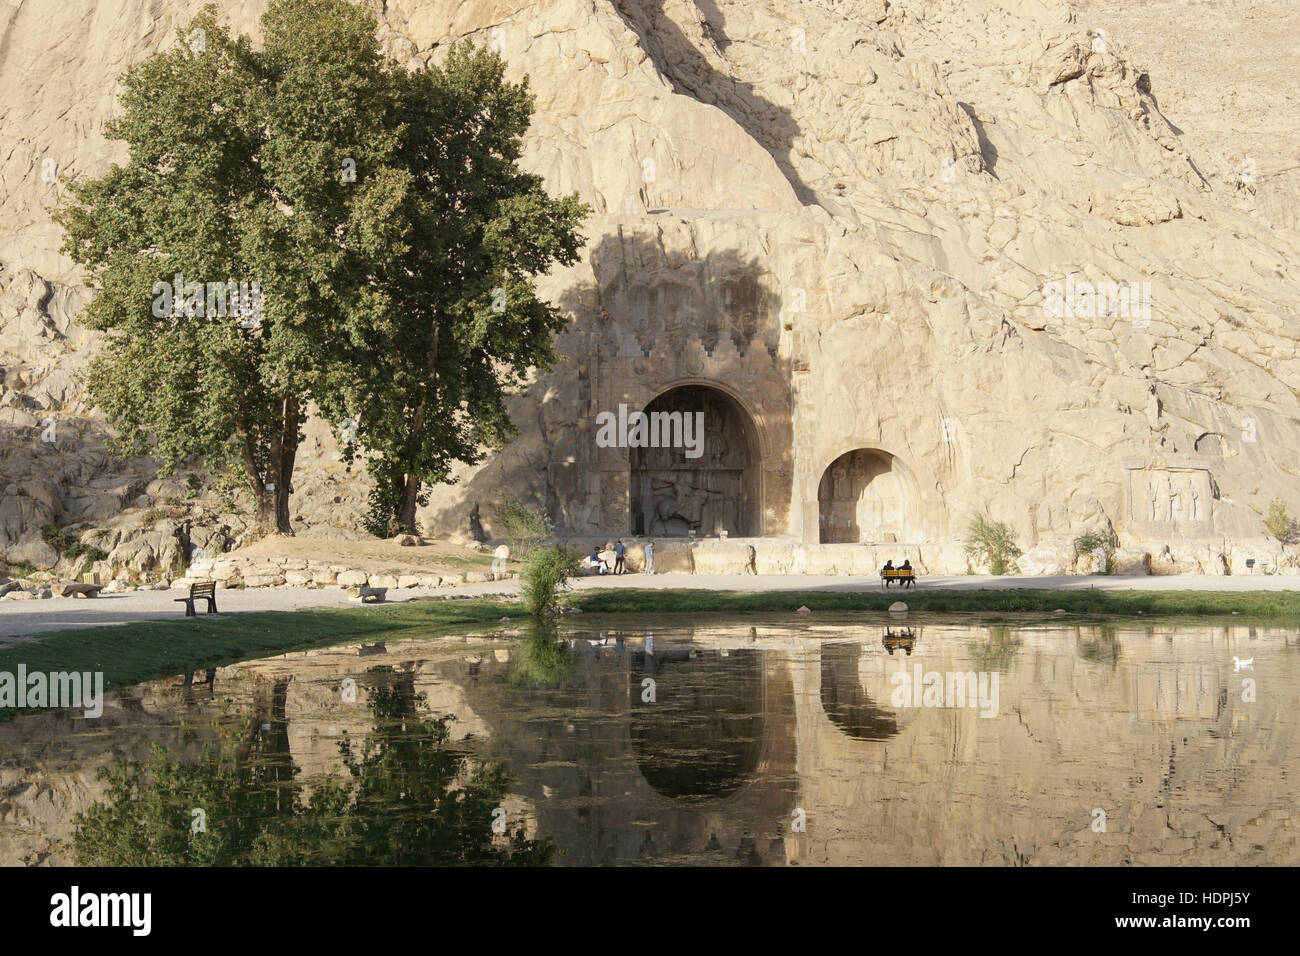 KERMANSHAH, IRAN - 3. Oktober 2016: Höhlen Taq-e Bostan, historische Stätte von Kermanshah am 3. Oktober 2016 im Iran, Asien Stockfoto